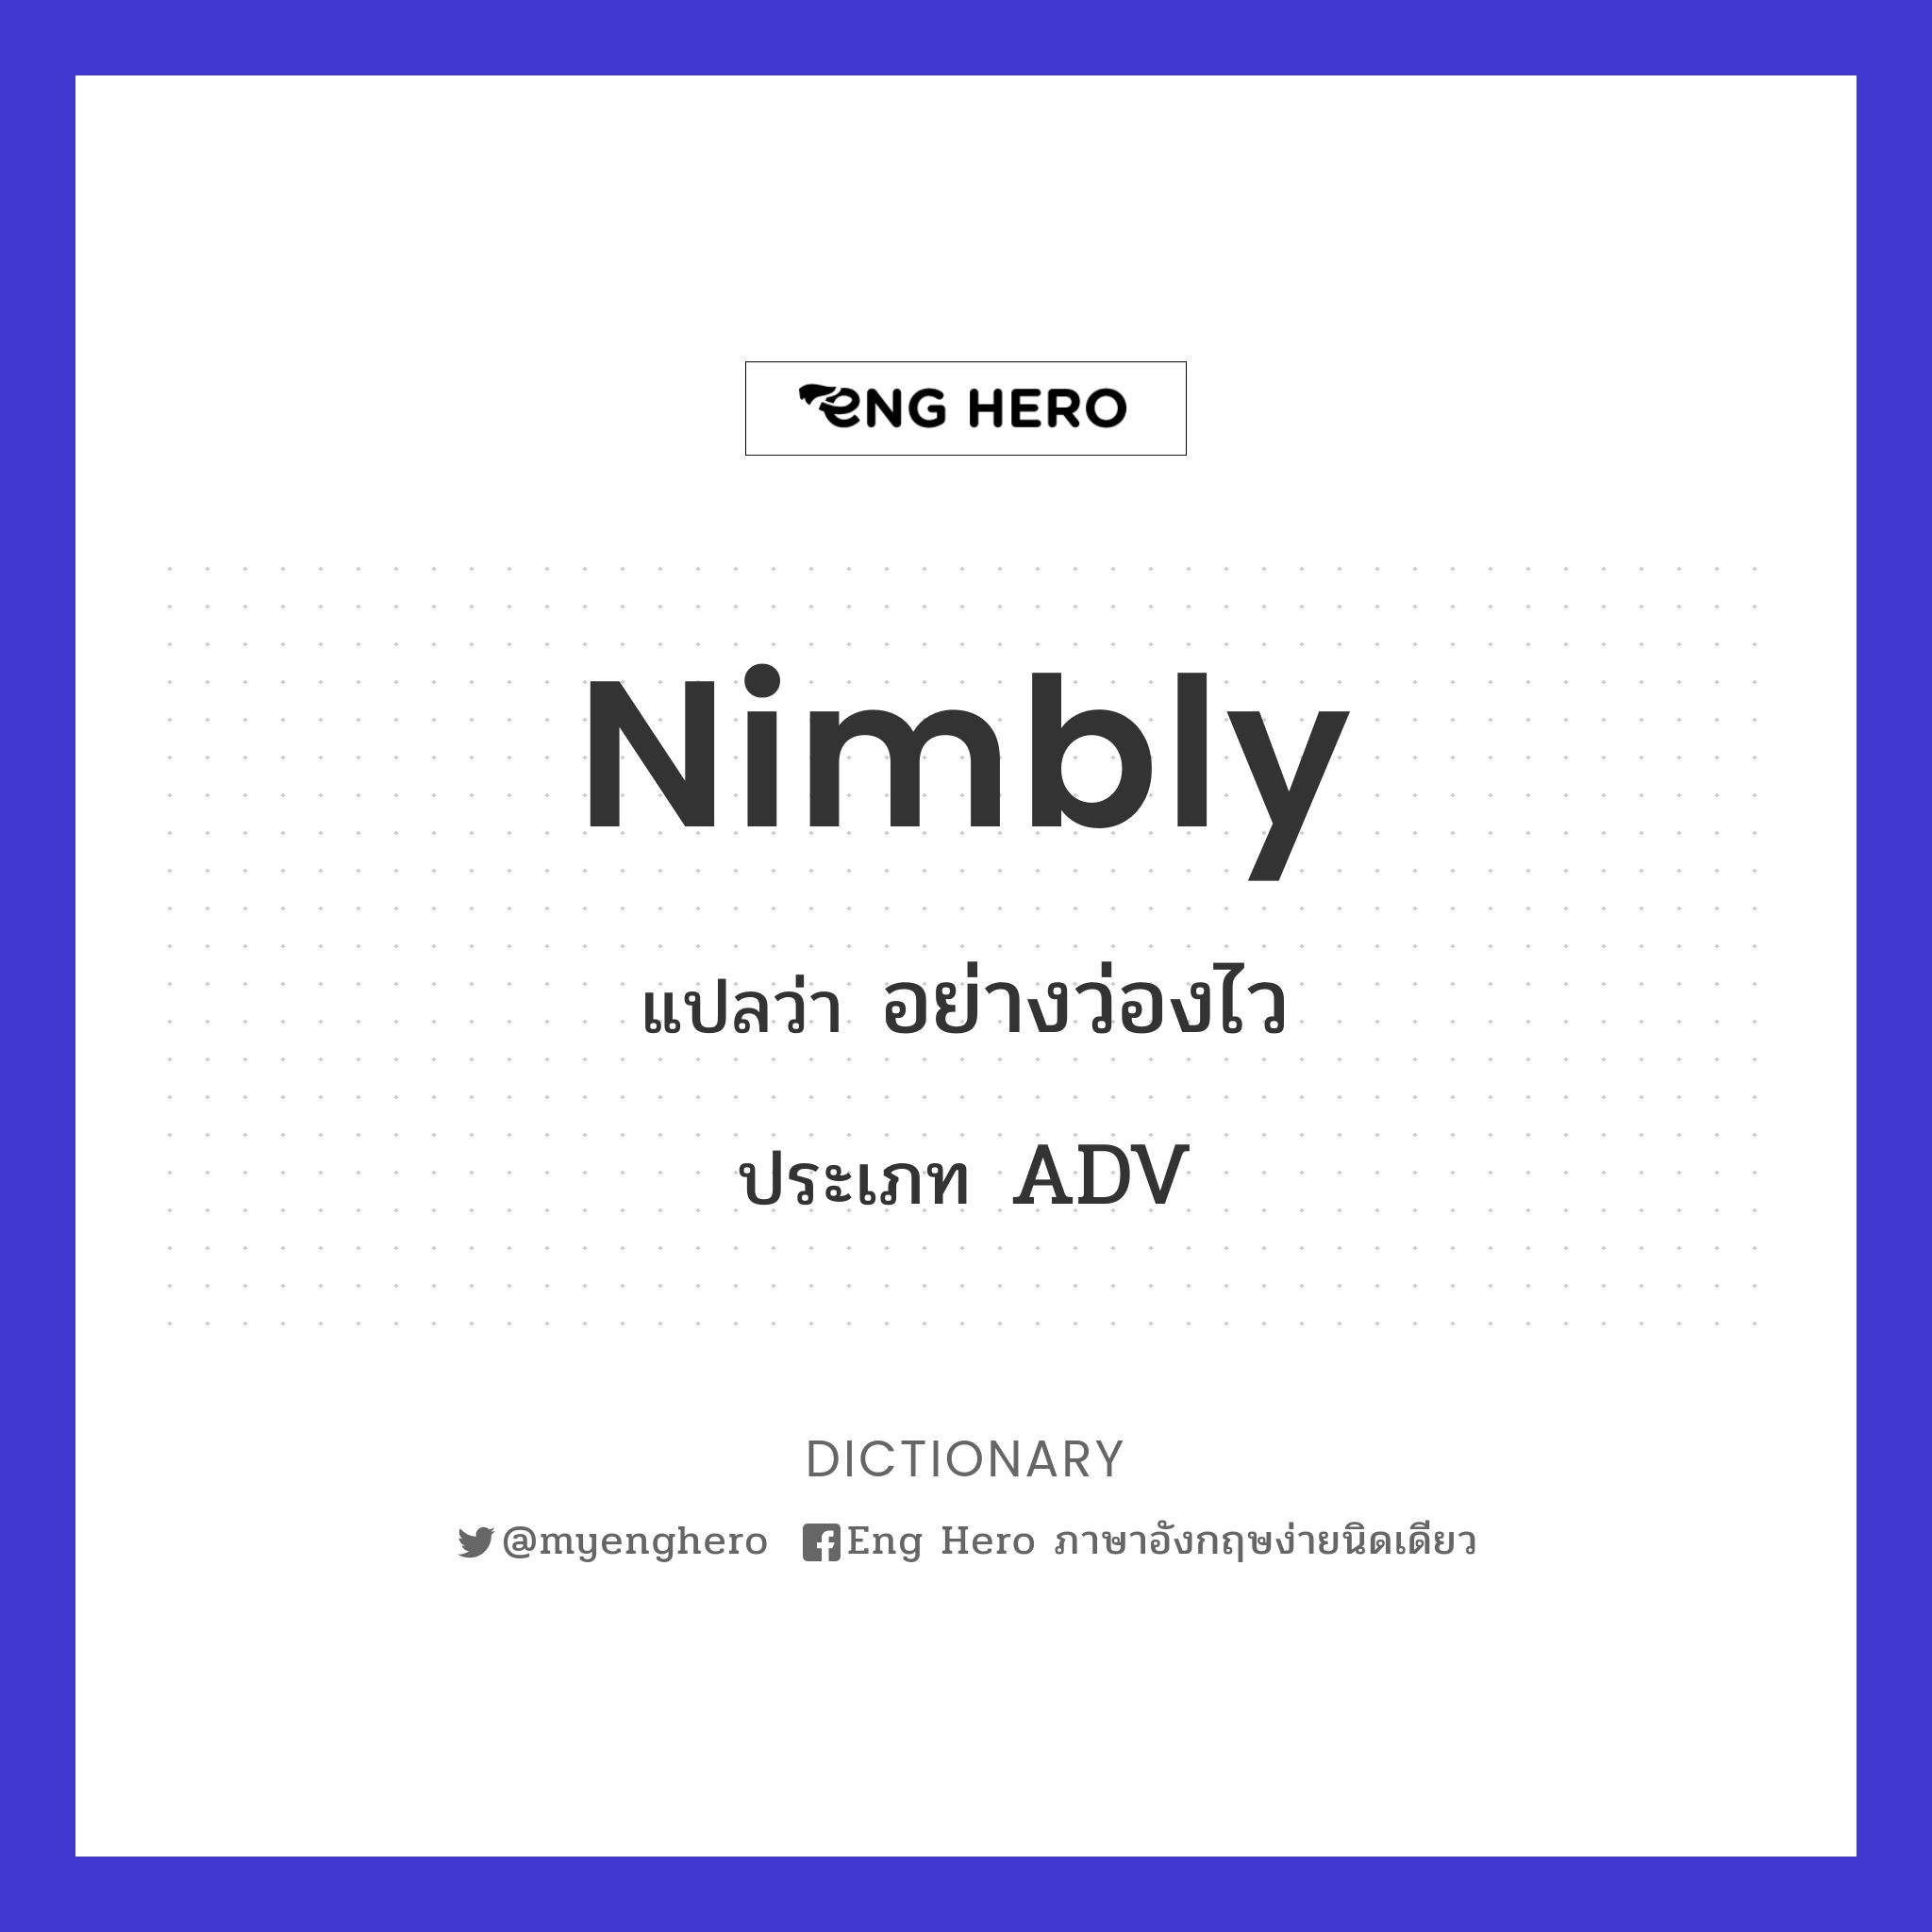 nimbly